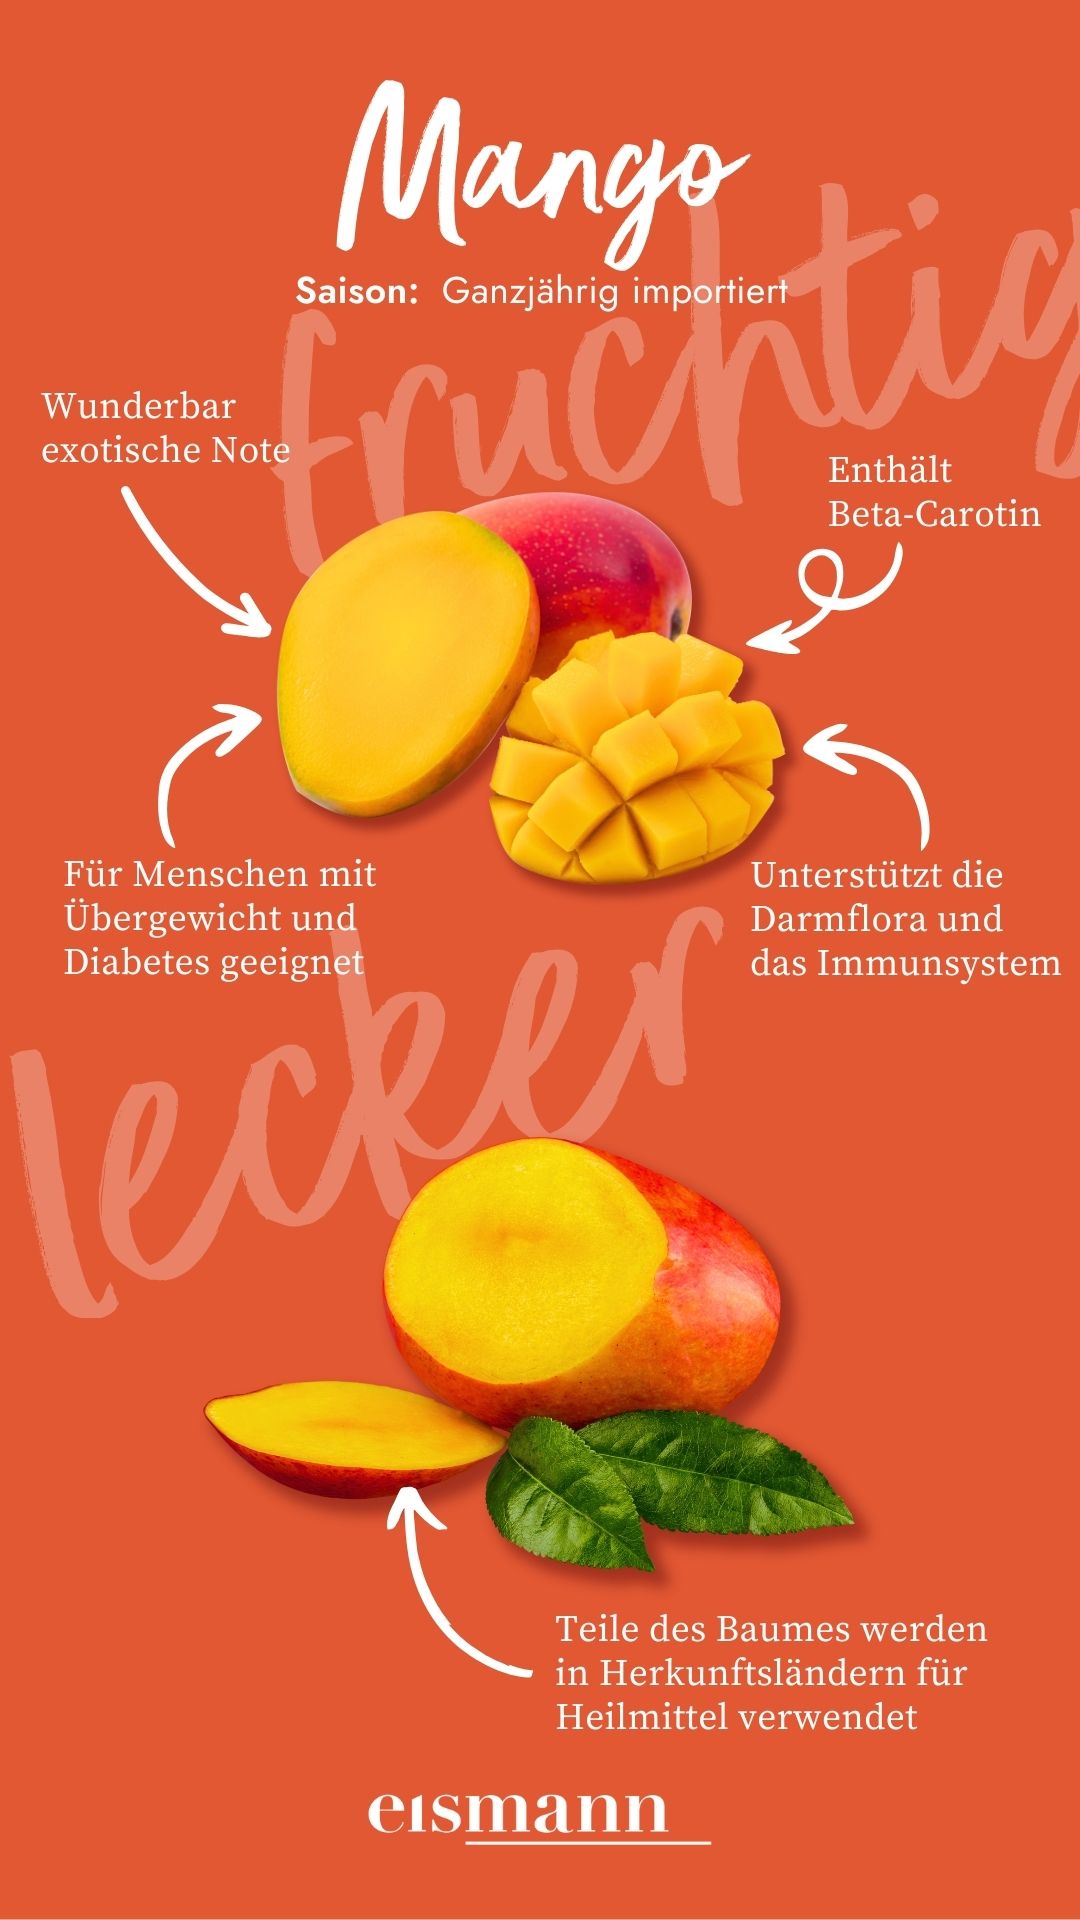 Mango - Eigenschaften, Saison und Vorteile in der Ernährung